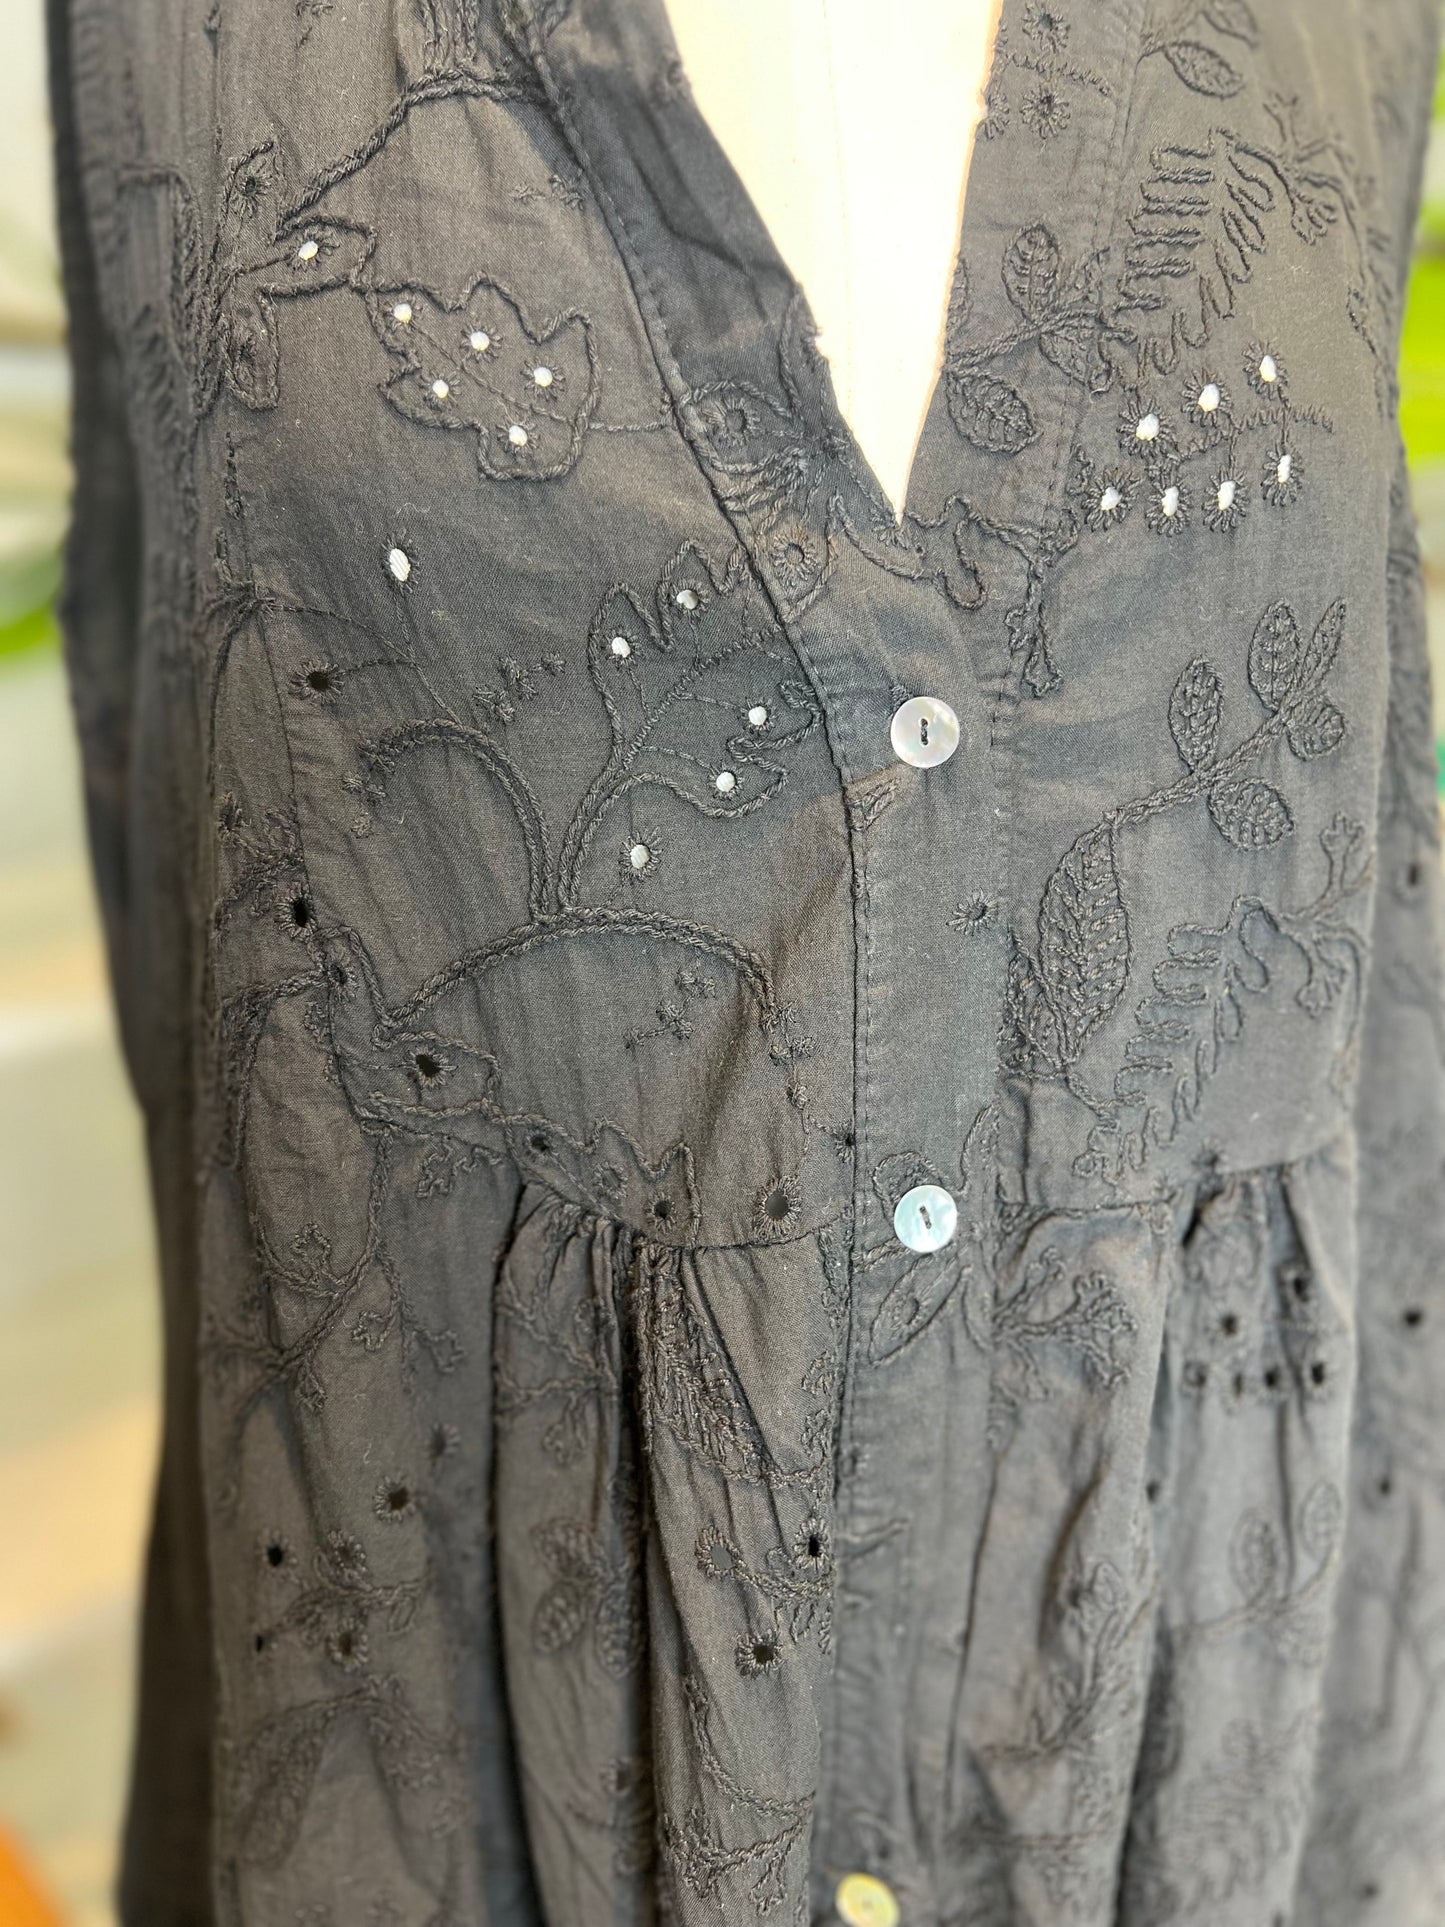 Bethany Black 100% Cotton Dress (OneSize)